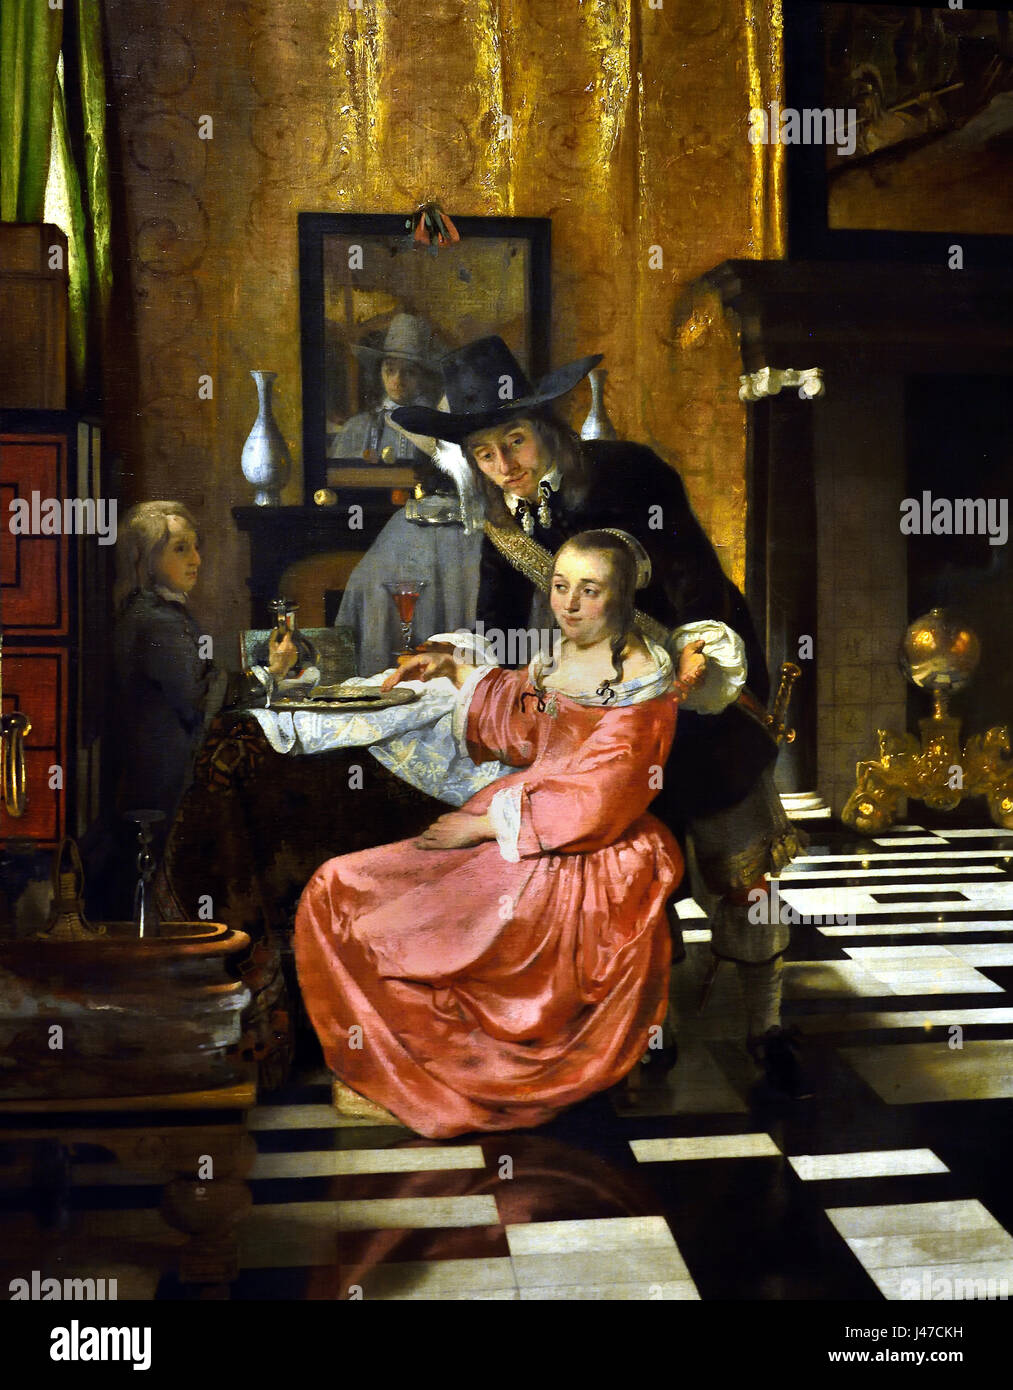 Innenansicht mit einer Frau weigert ein Glas Wein 1650 Ludolf de Jongh 1616-1679 Niederländisch, den Niederlanden, Stockfoto